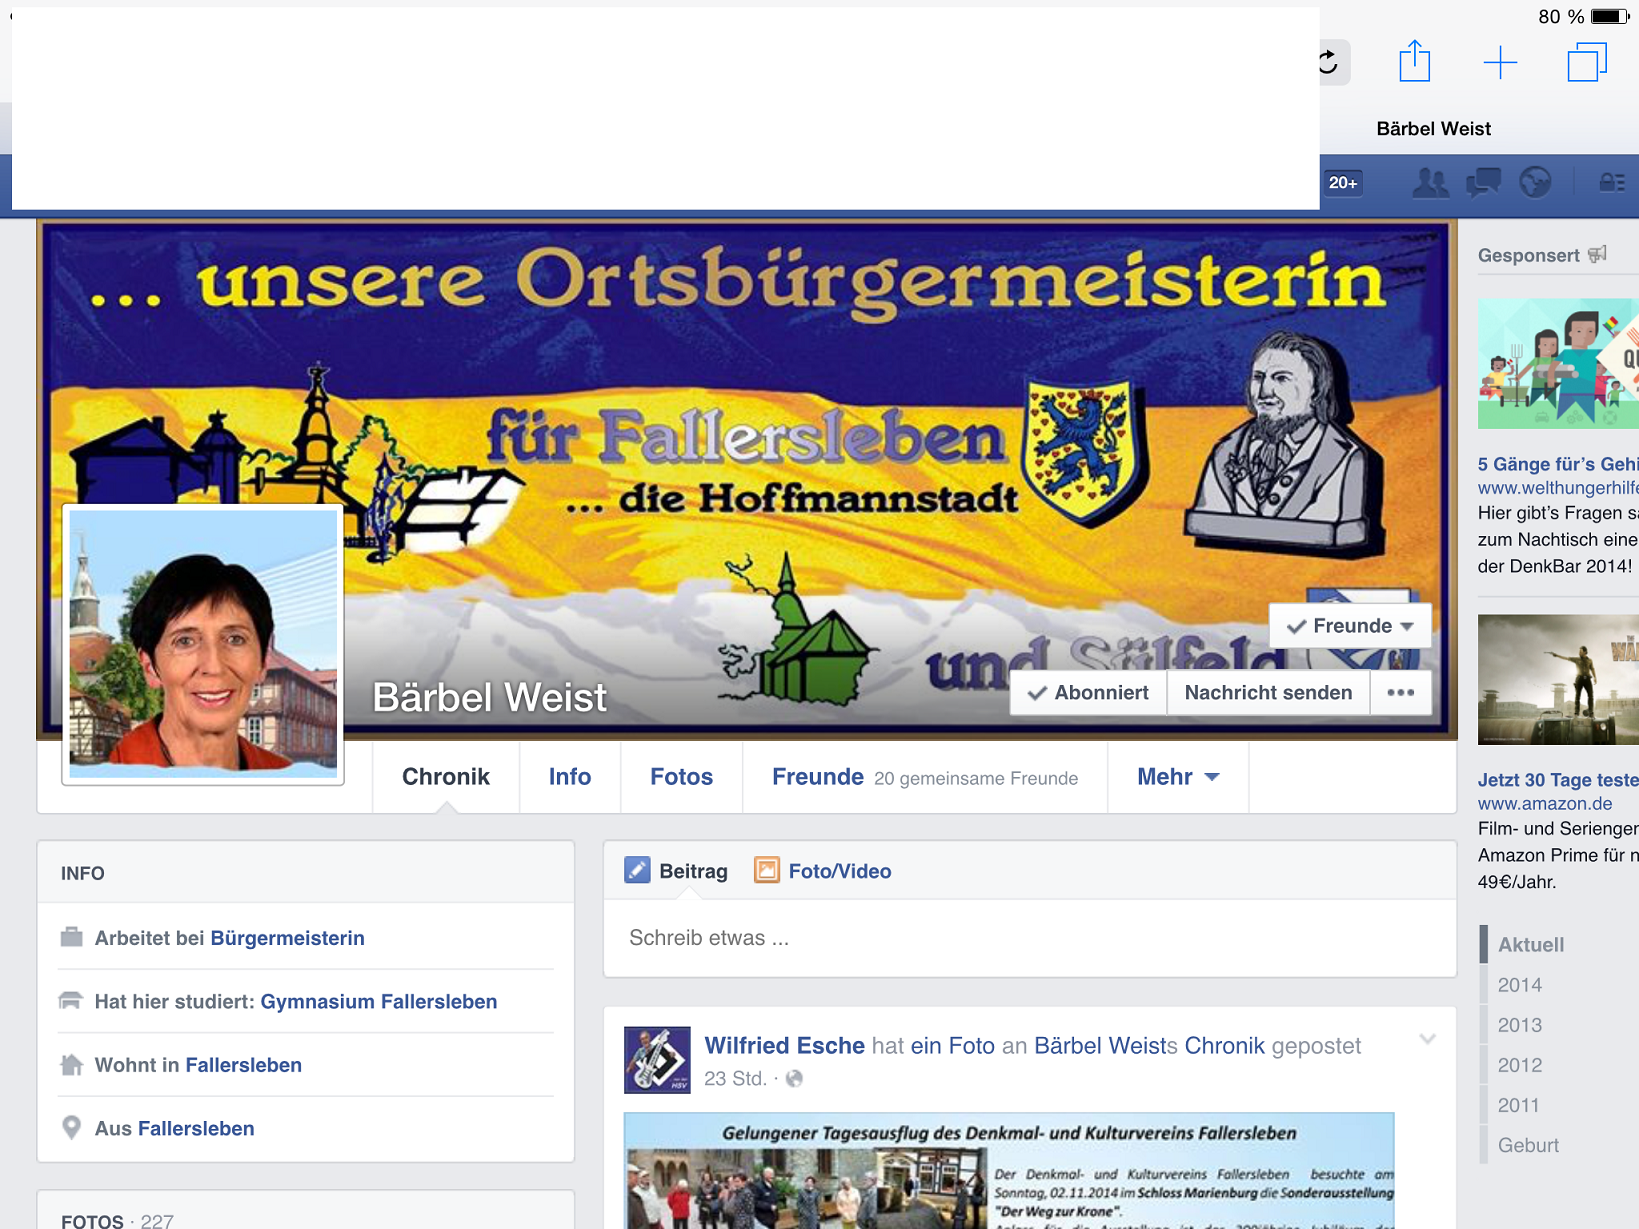 Bürgermeisterin Bärbel Weist auf ihrer Facebook-Seitee